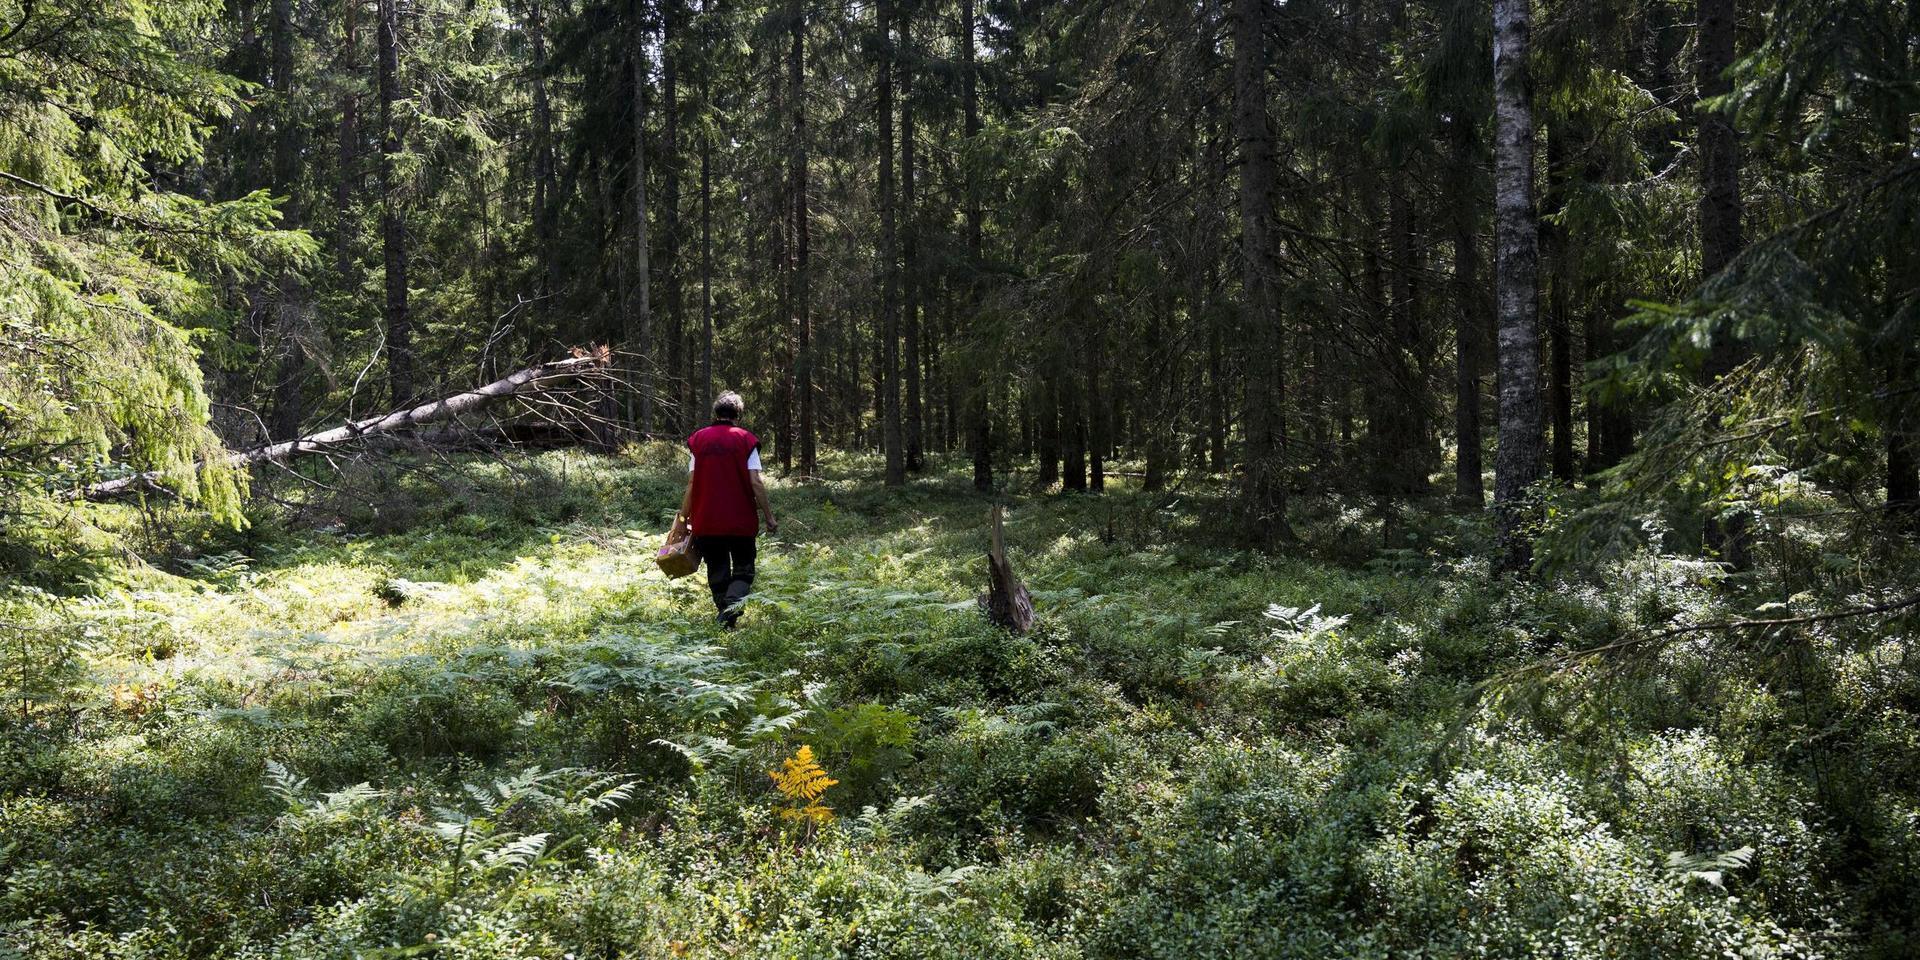 &quot;I dag har 93 procent av all skogsmark i Sverige drabbats av kalhuggning och förvandlats till barrträdsplantager, med samma slags träd i täta rader, oftast gran&quot;, skriver Sture Boström.